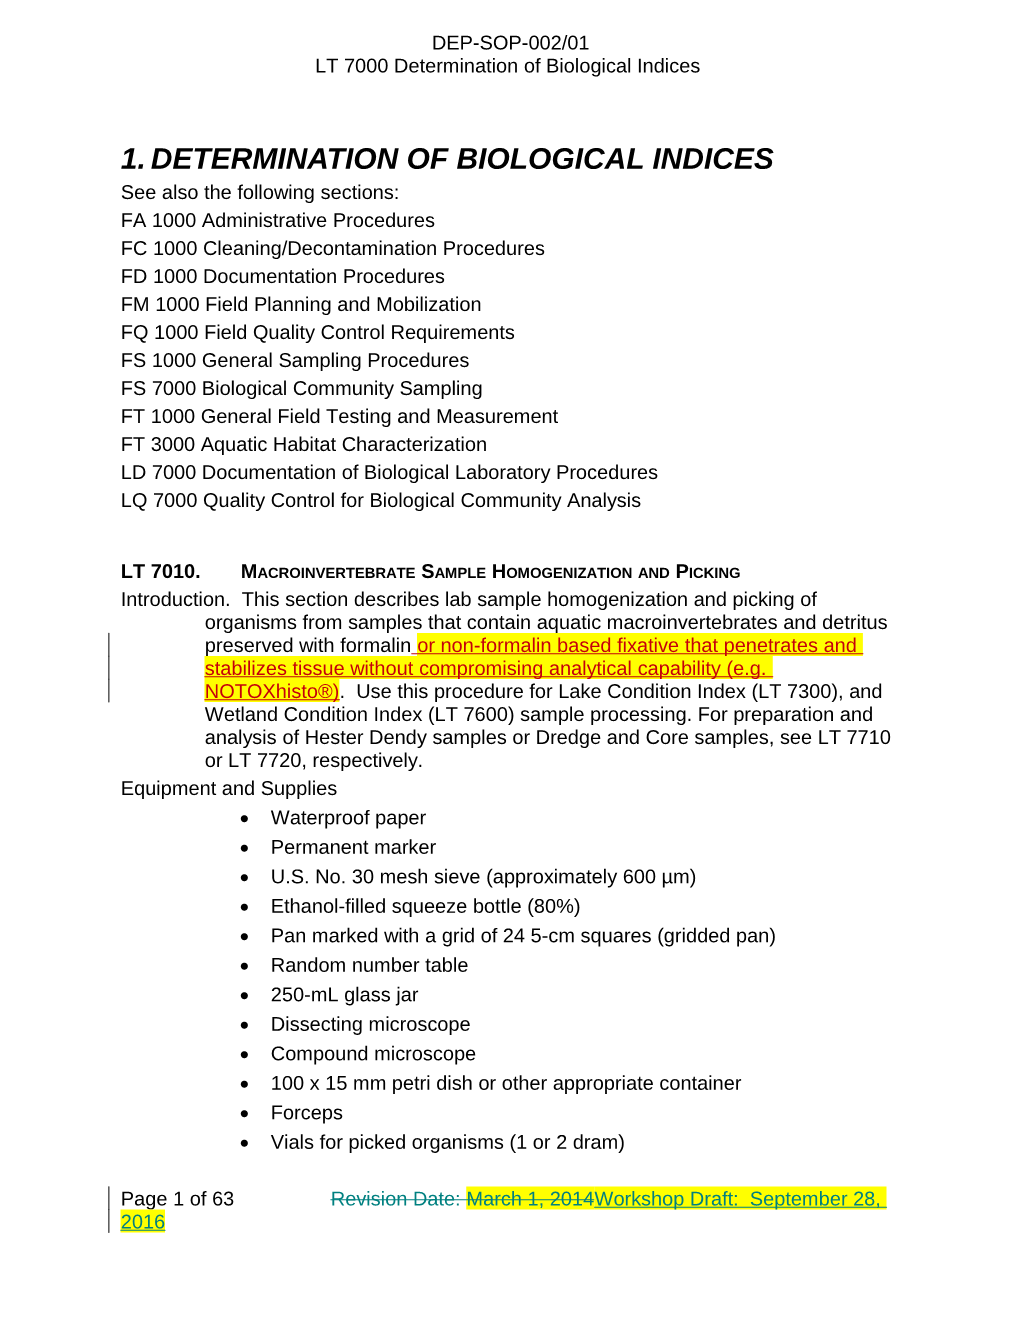 Lt 7000. Determination of Biological Indices